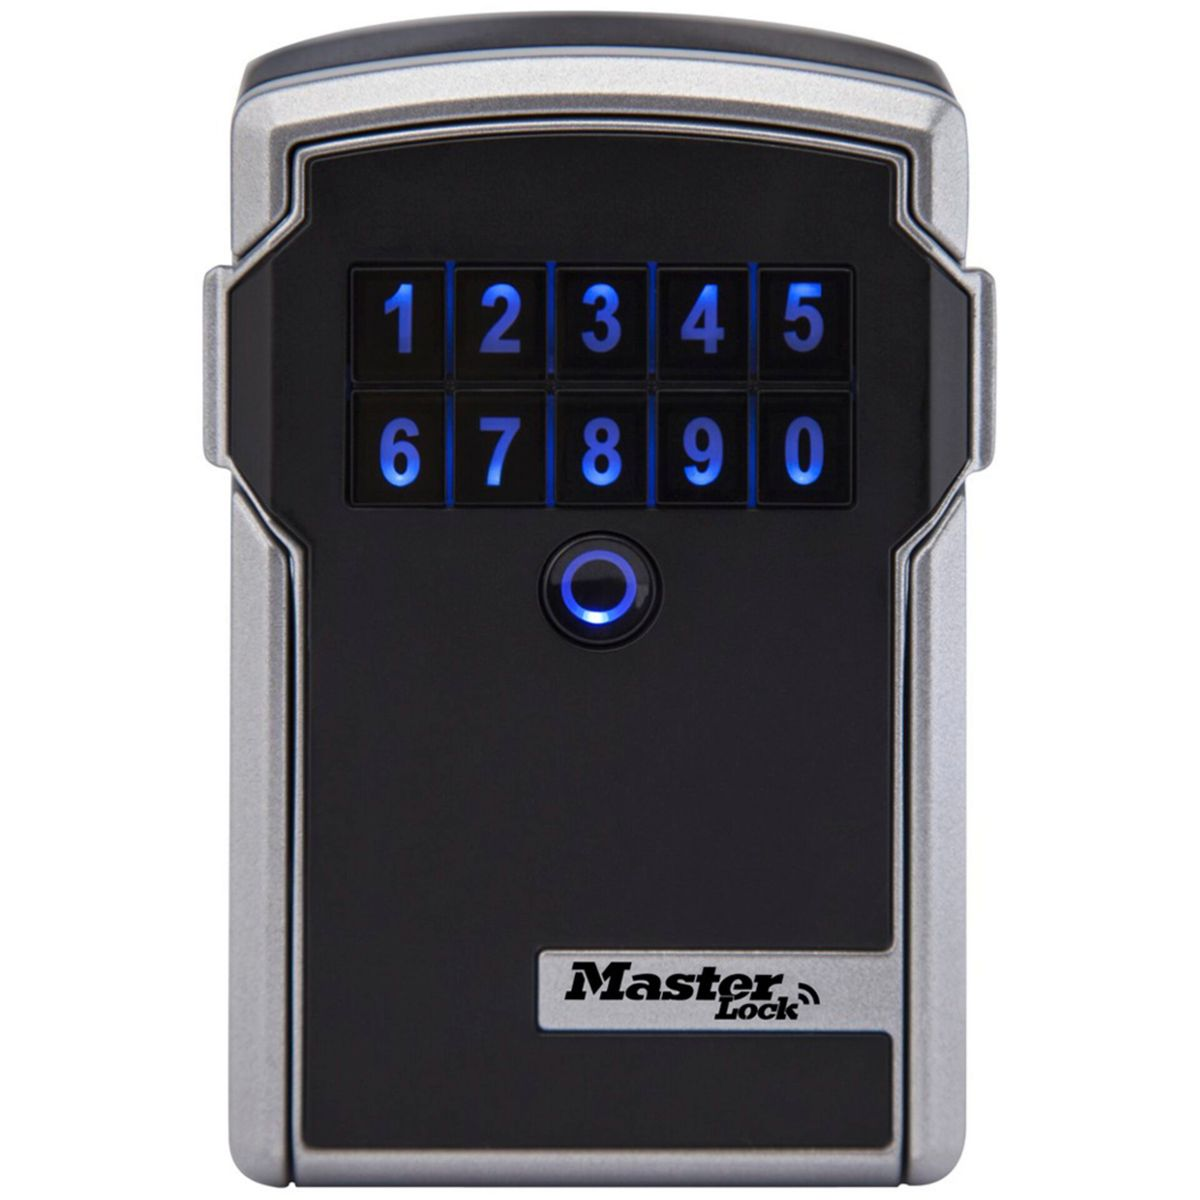 grau MASTERLOCK Lock Schlüsselkasten Schlüsseltresor / Bluetooth 5441EURD schwarz Master schwarz grau